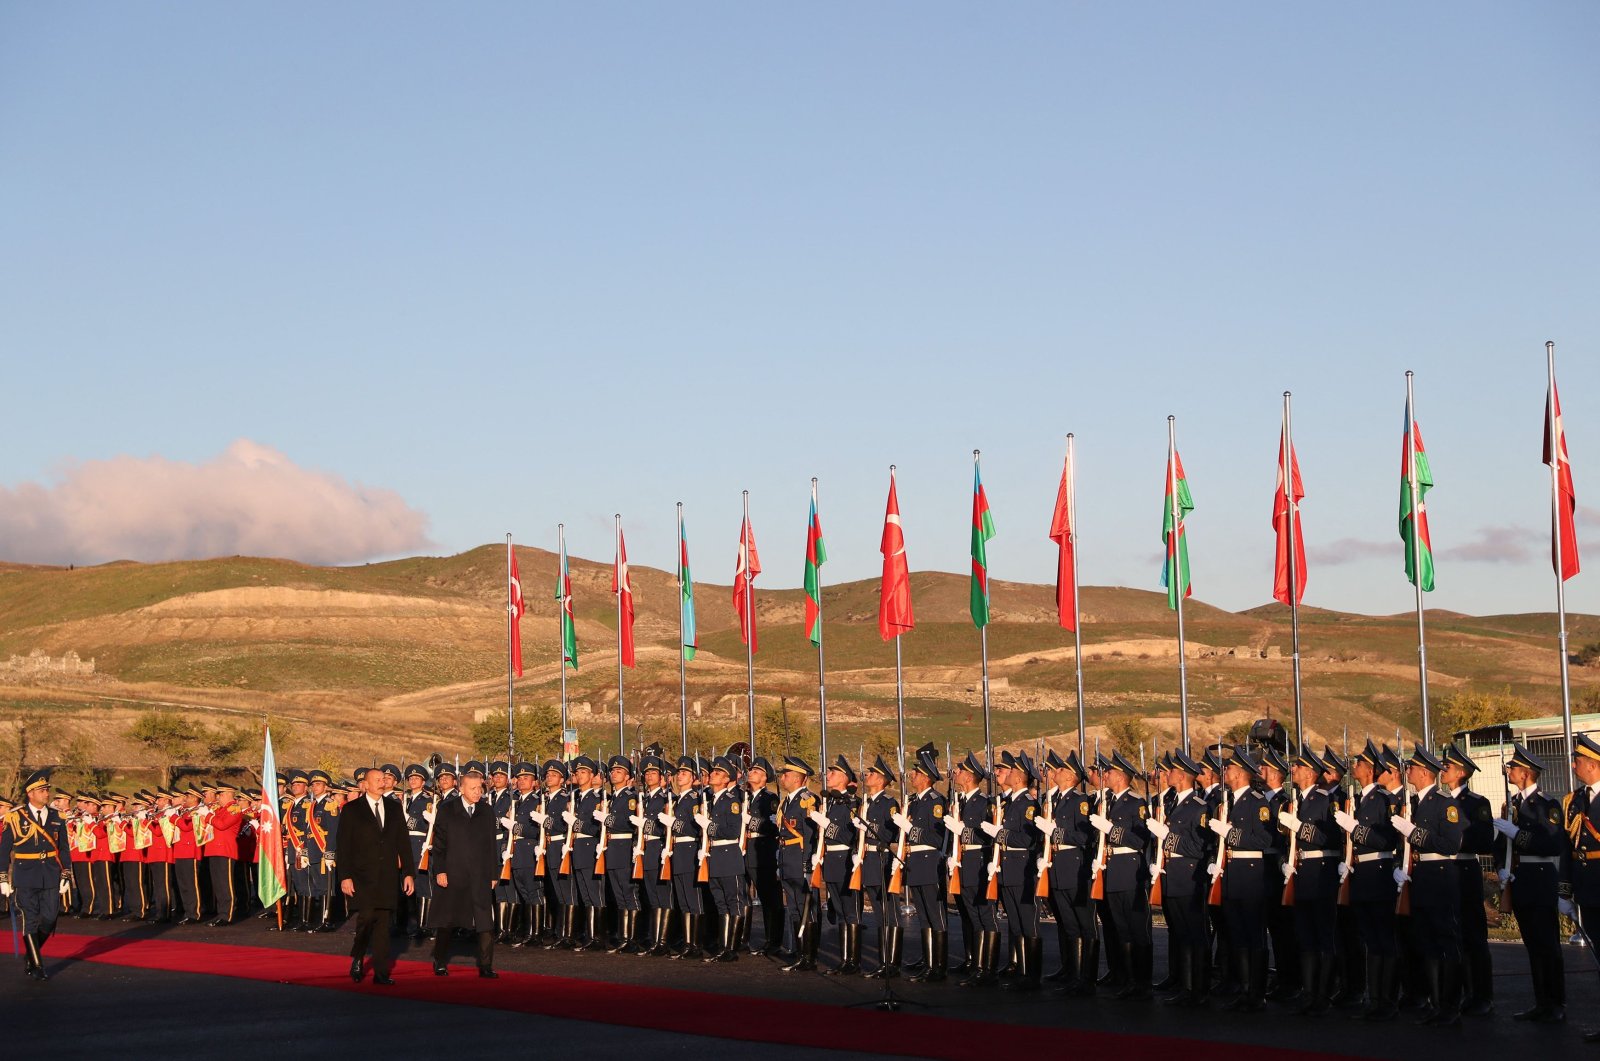 Kemenangan Karabakh membuka jalan bagi perdamaian permanen, stabilitas di kawasan